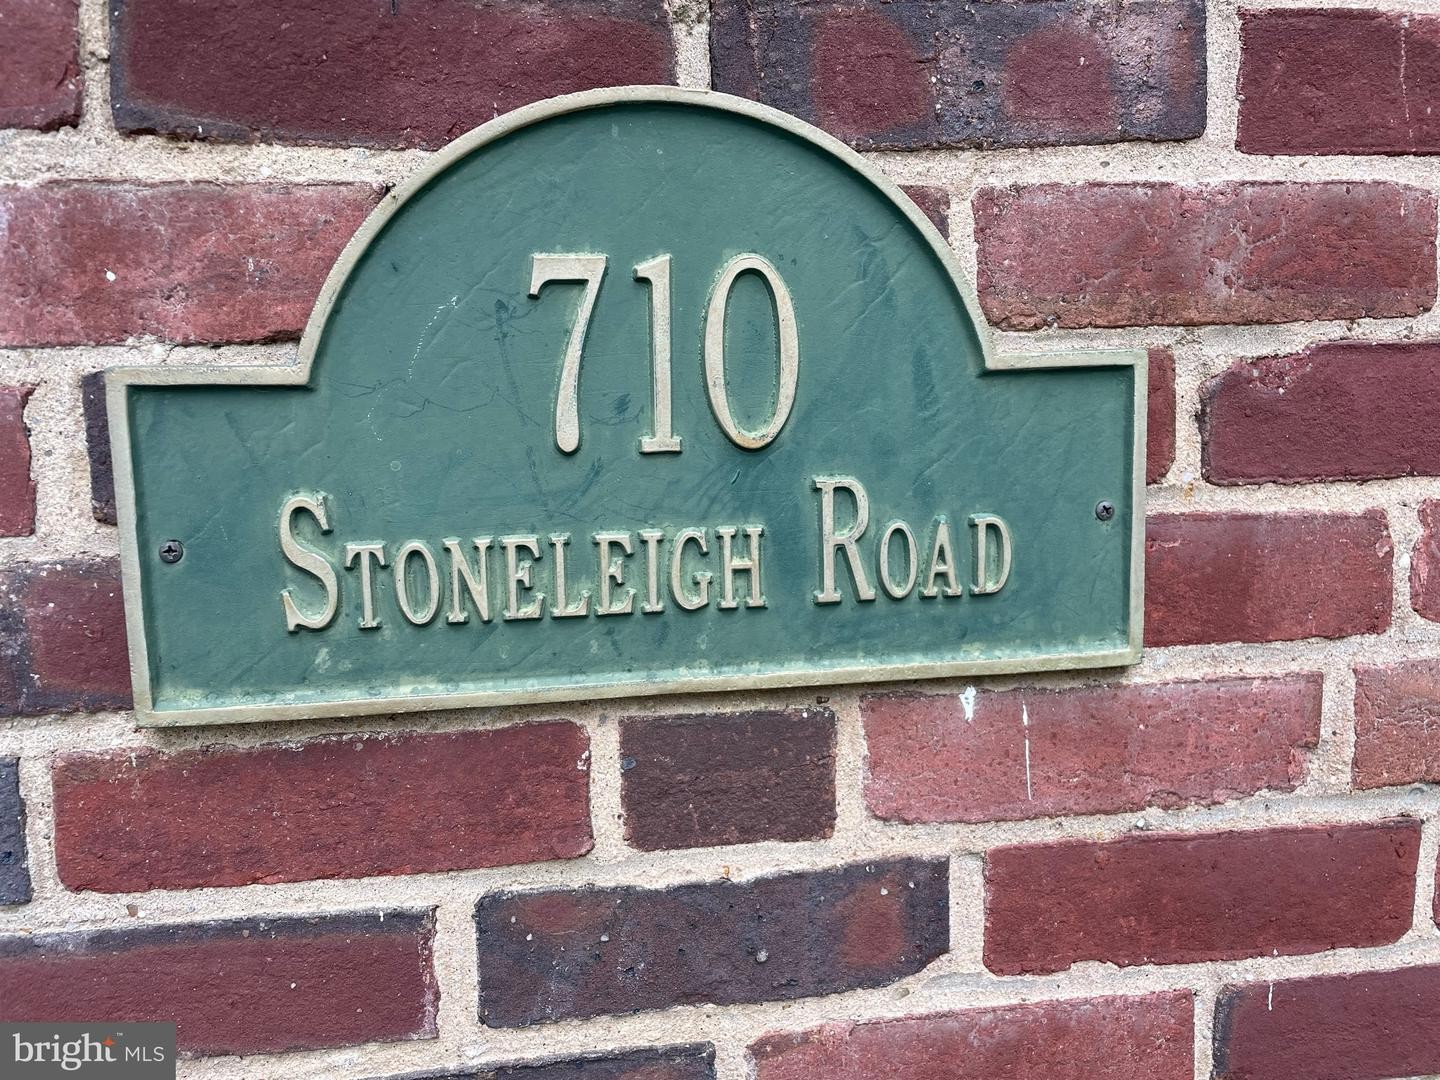 1. 710 Stoneleigh Rd